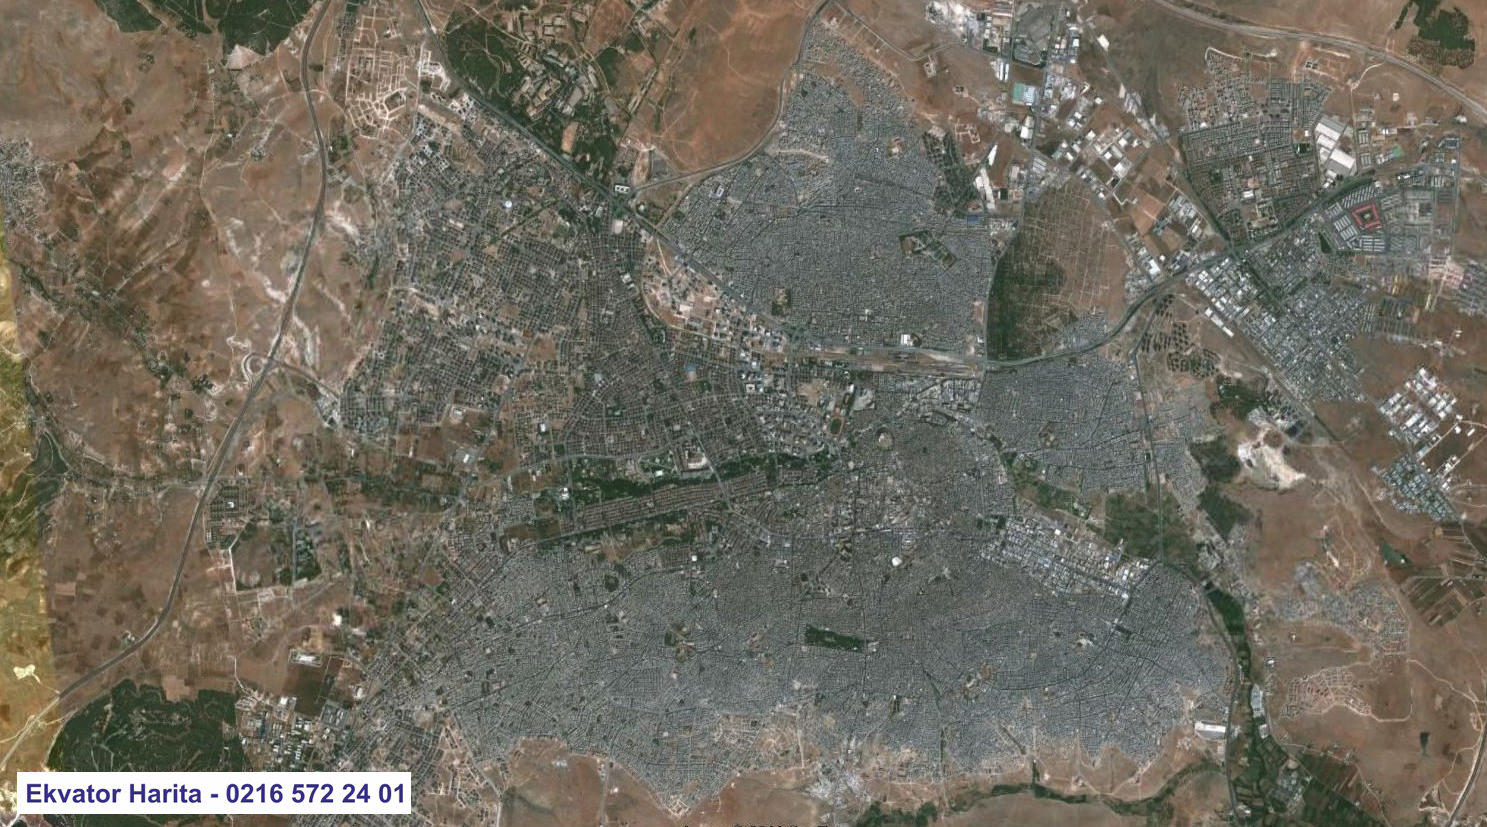 Gaziantep Uydu Haritası Örnek Fotoğrafı